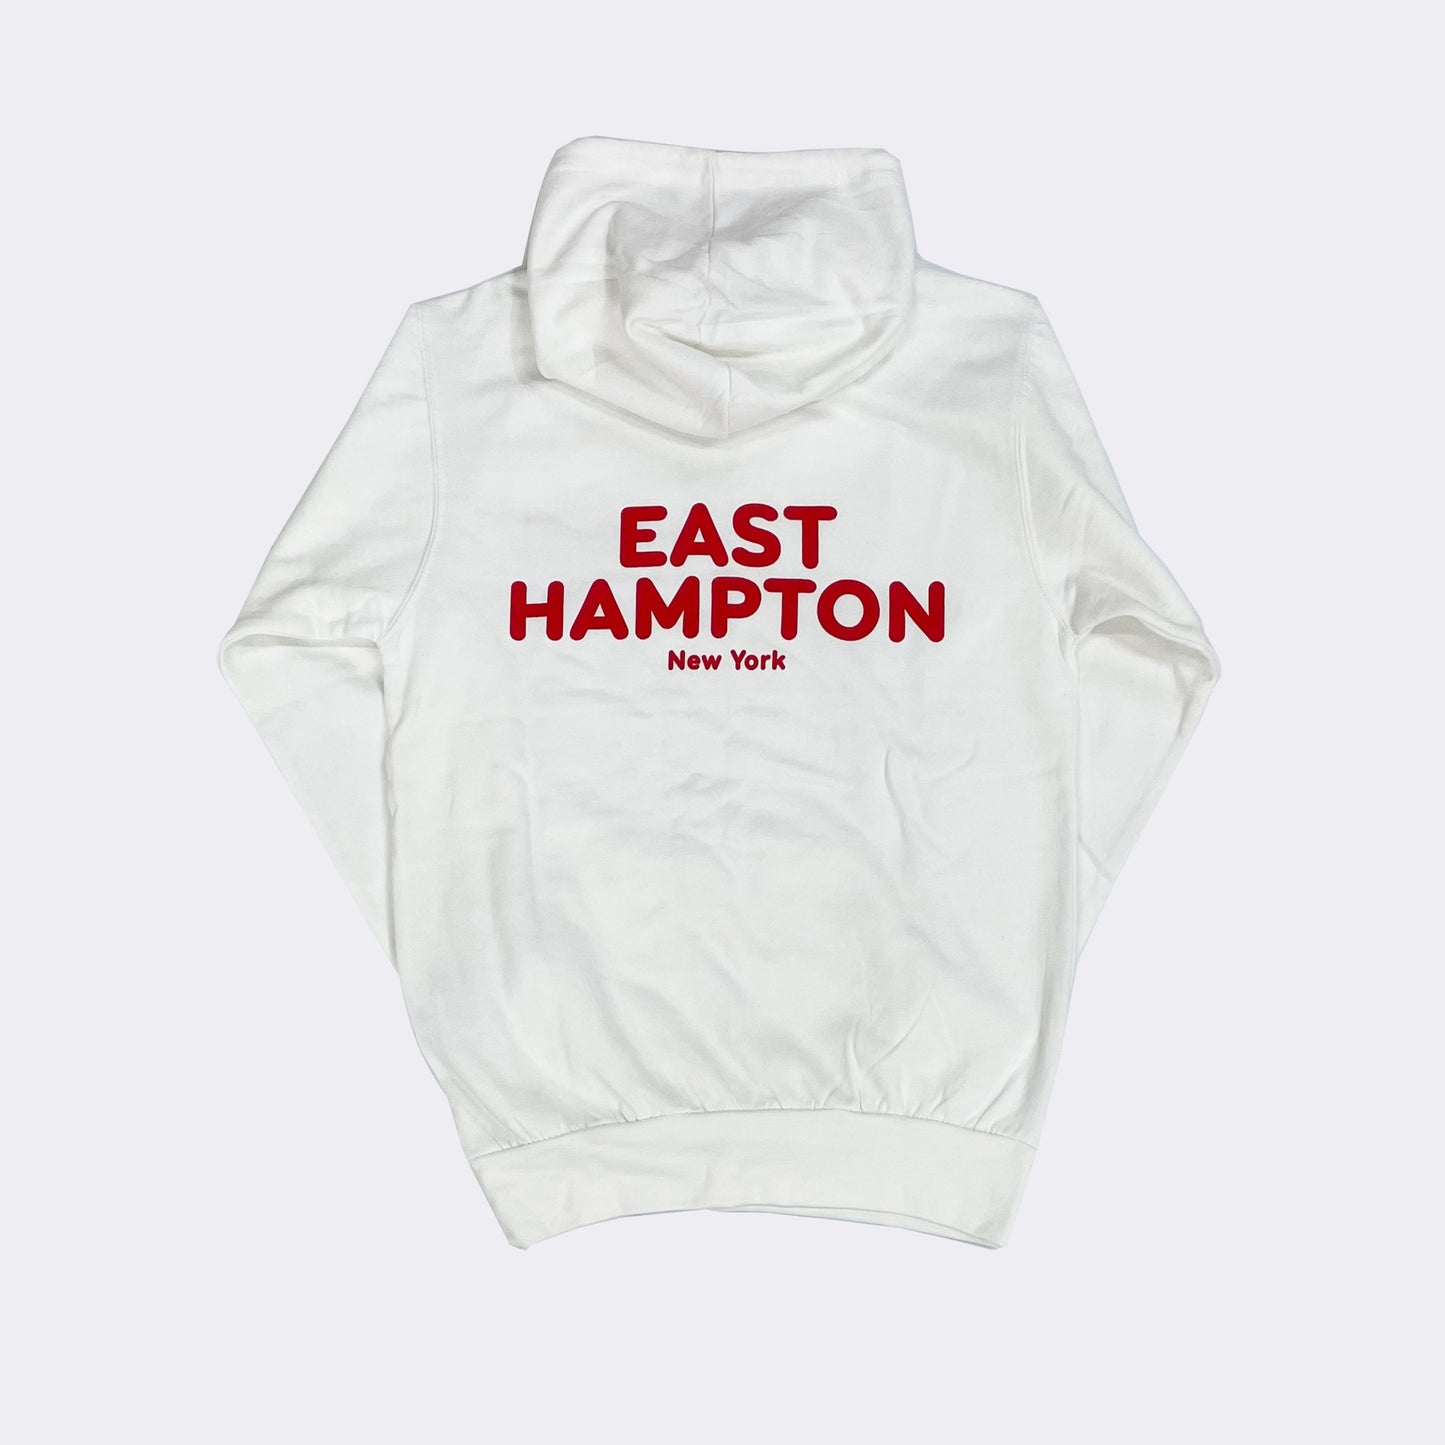 We Love East Hampton Hoodie (adult)